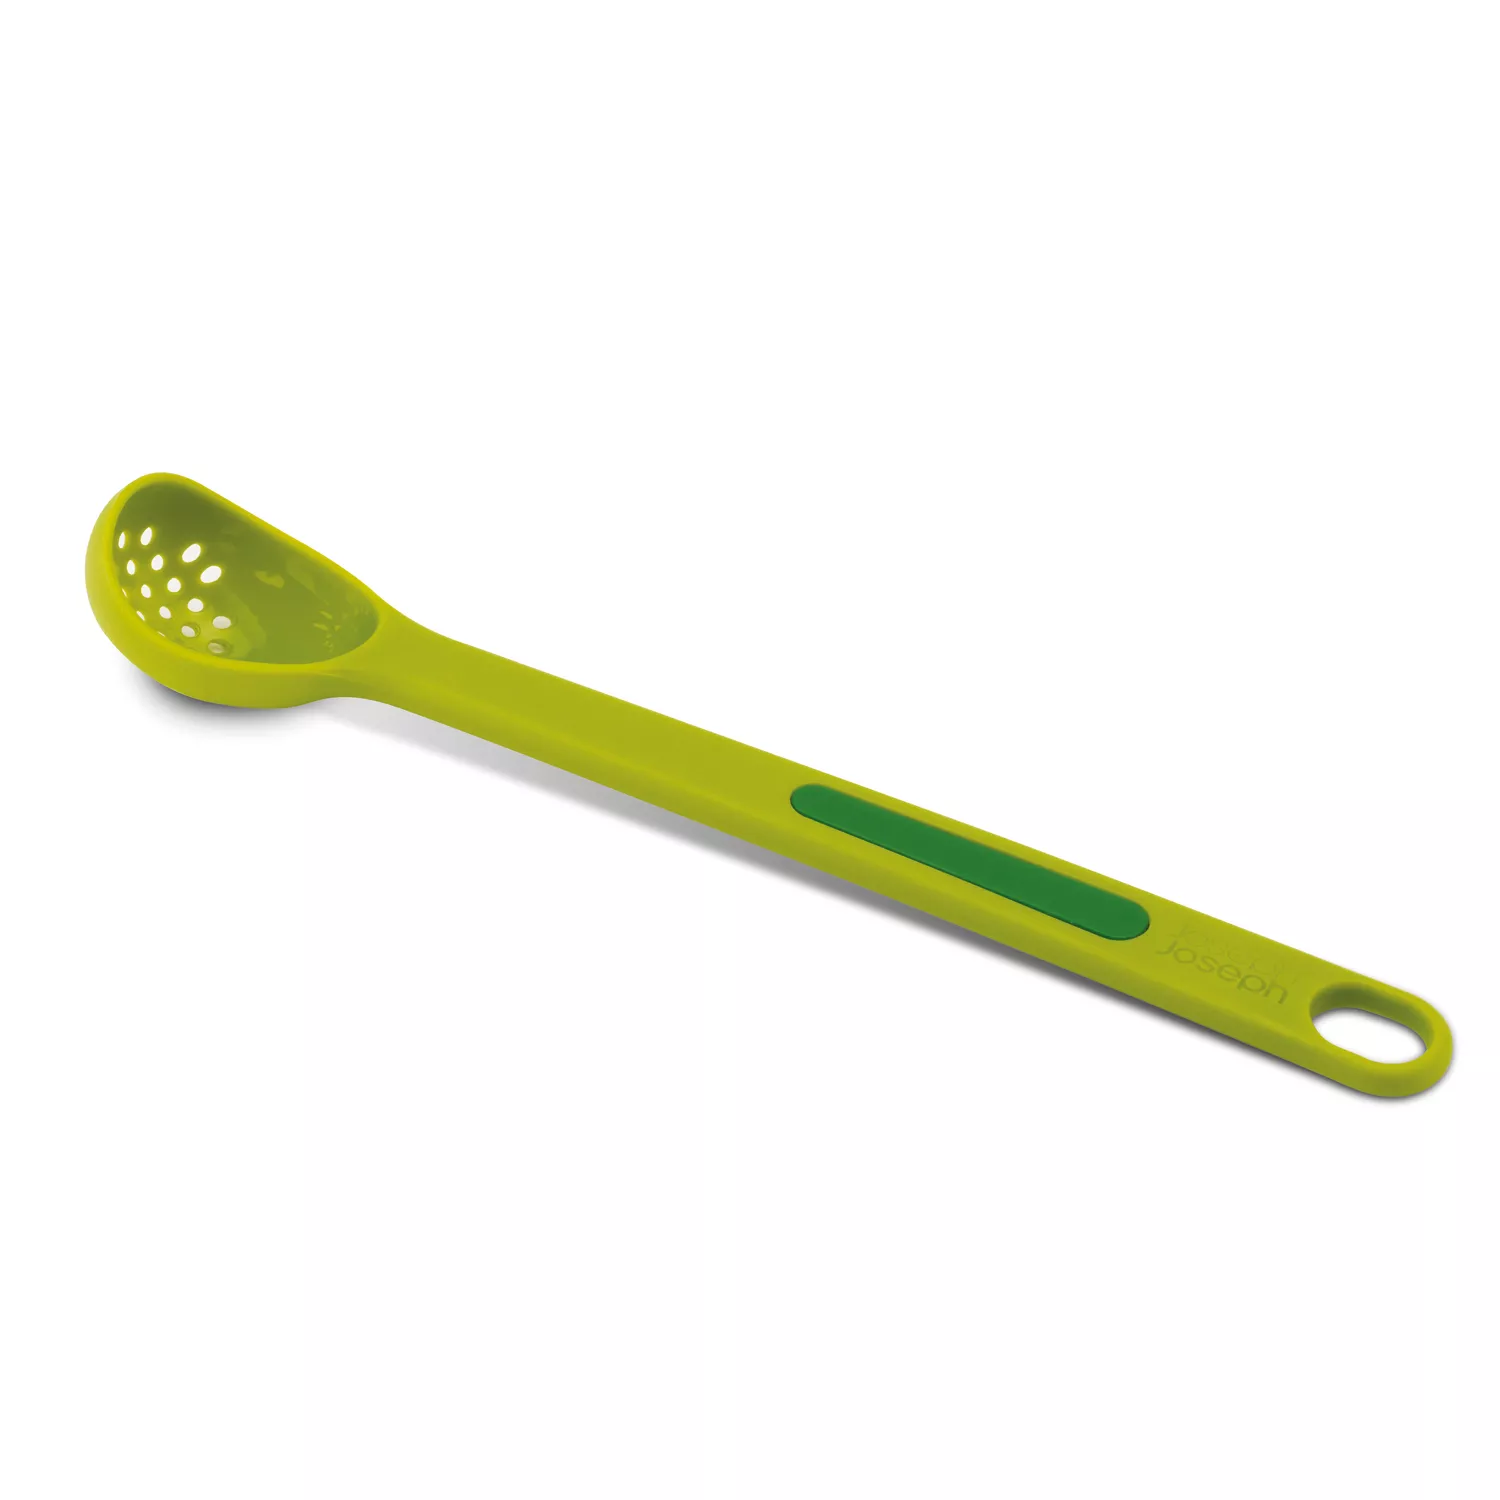 Big Green Egg  Big Green Egg spatula mat with pan scraper and wooden spoon